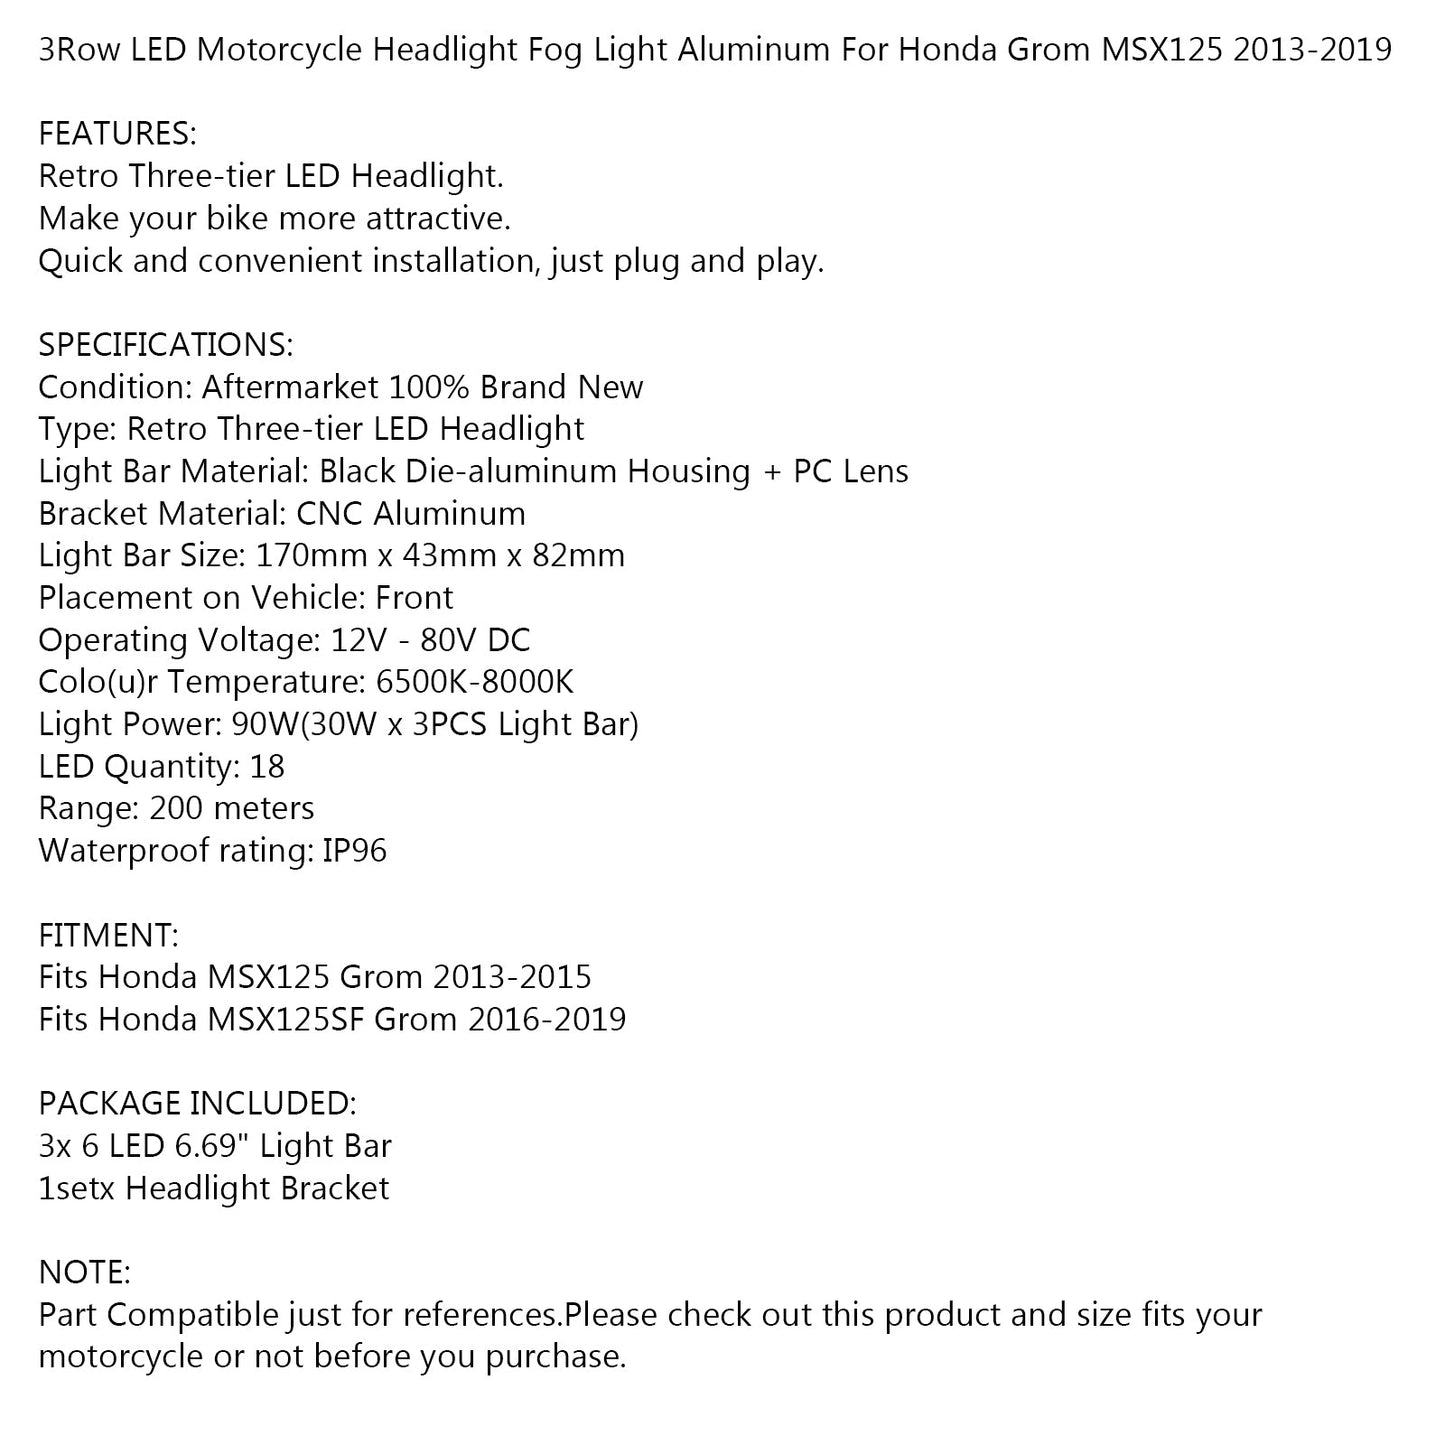 3Row LED Motorcycle Headlight Fog Light Aluminum For Honda MSX125 Grom 2013-2015 MSX125SF Grom 2016-2019 WHI